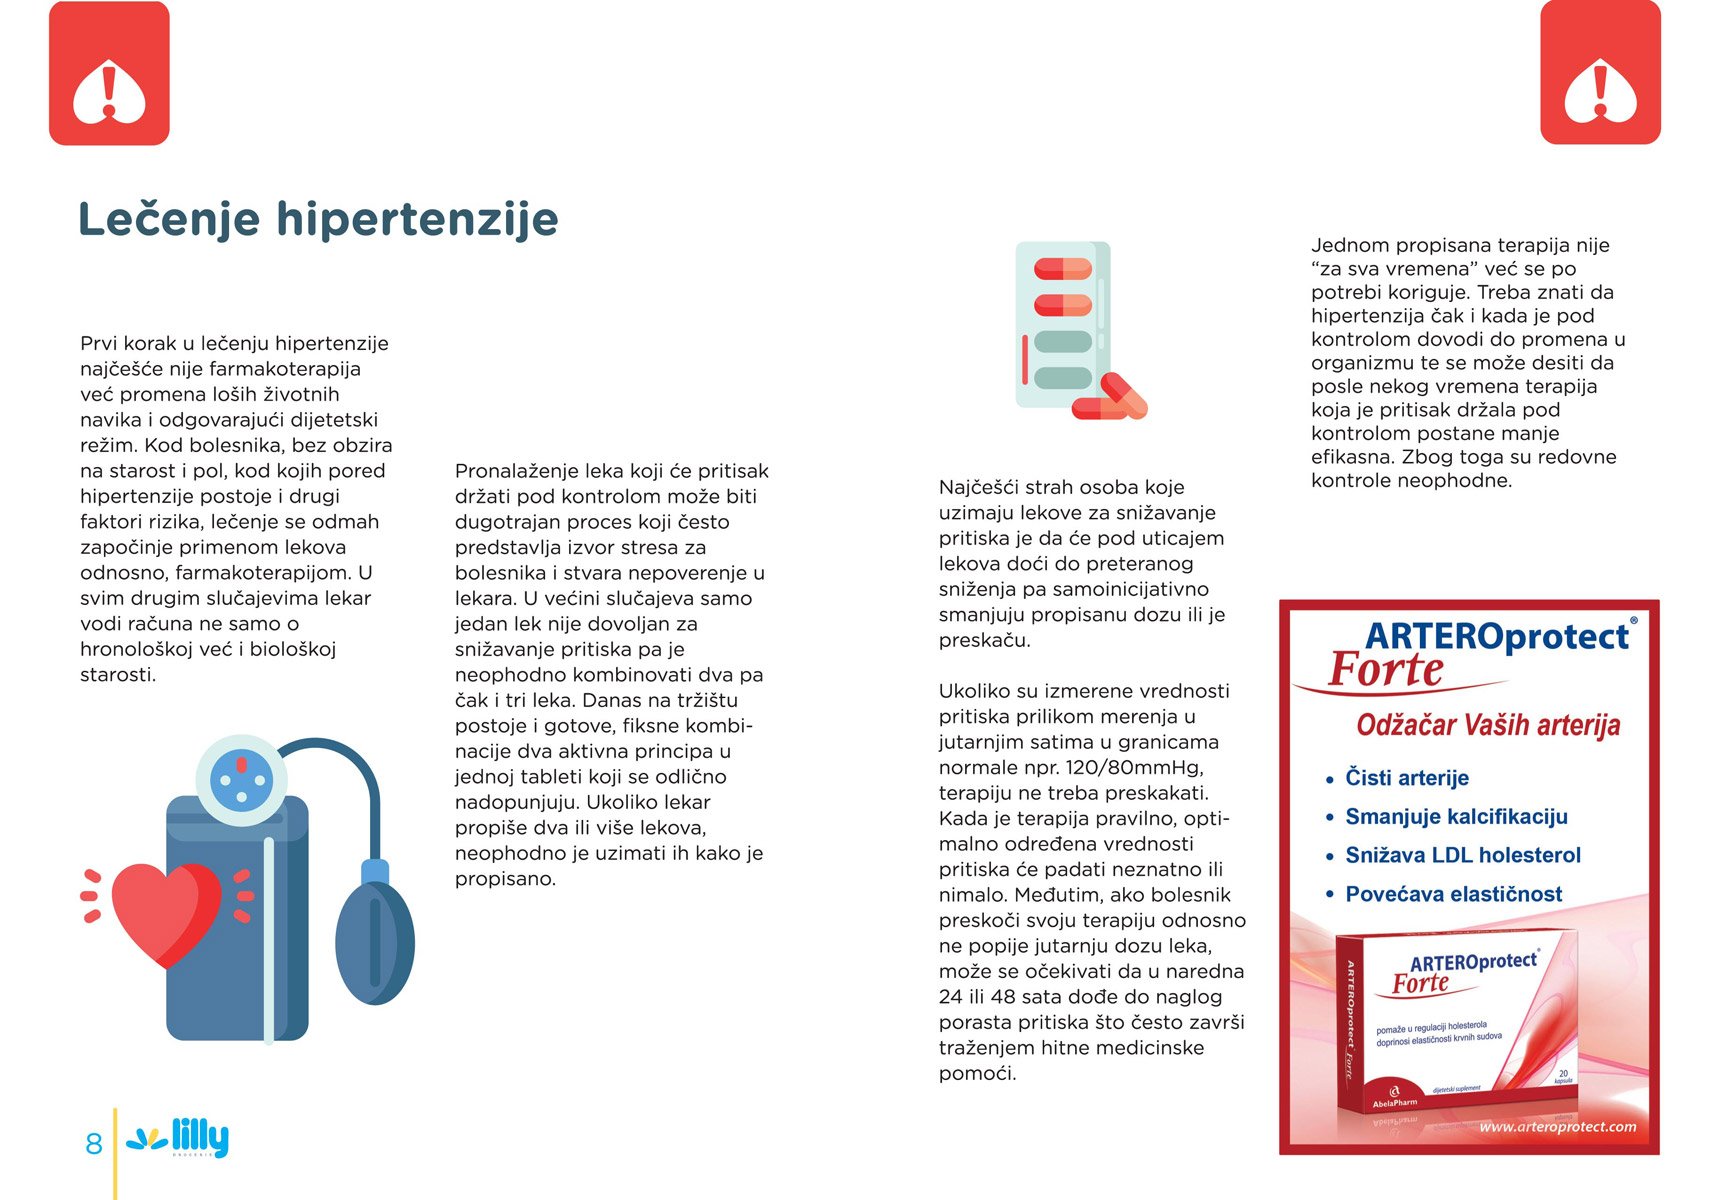 2. upotreba u asd- hipertenzije thoroughwax i hipertenzija